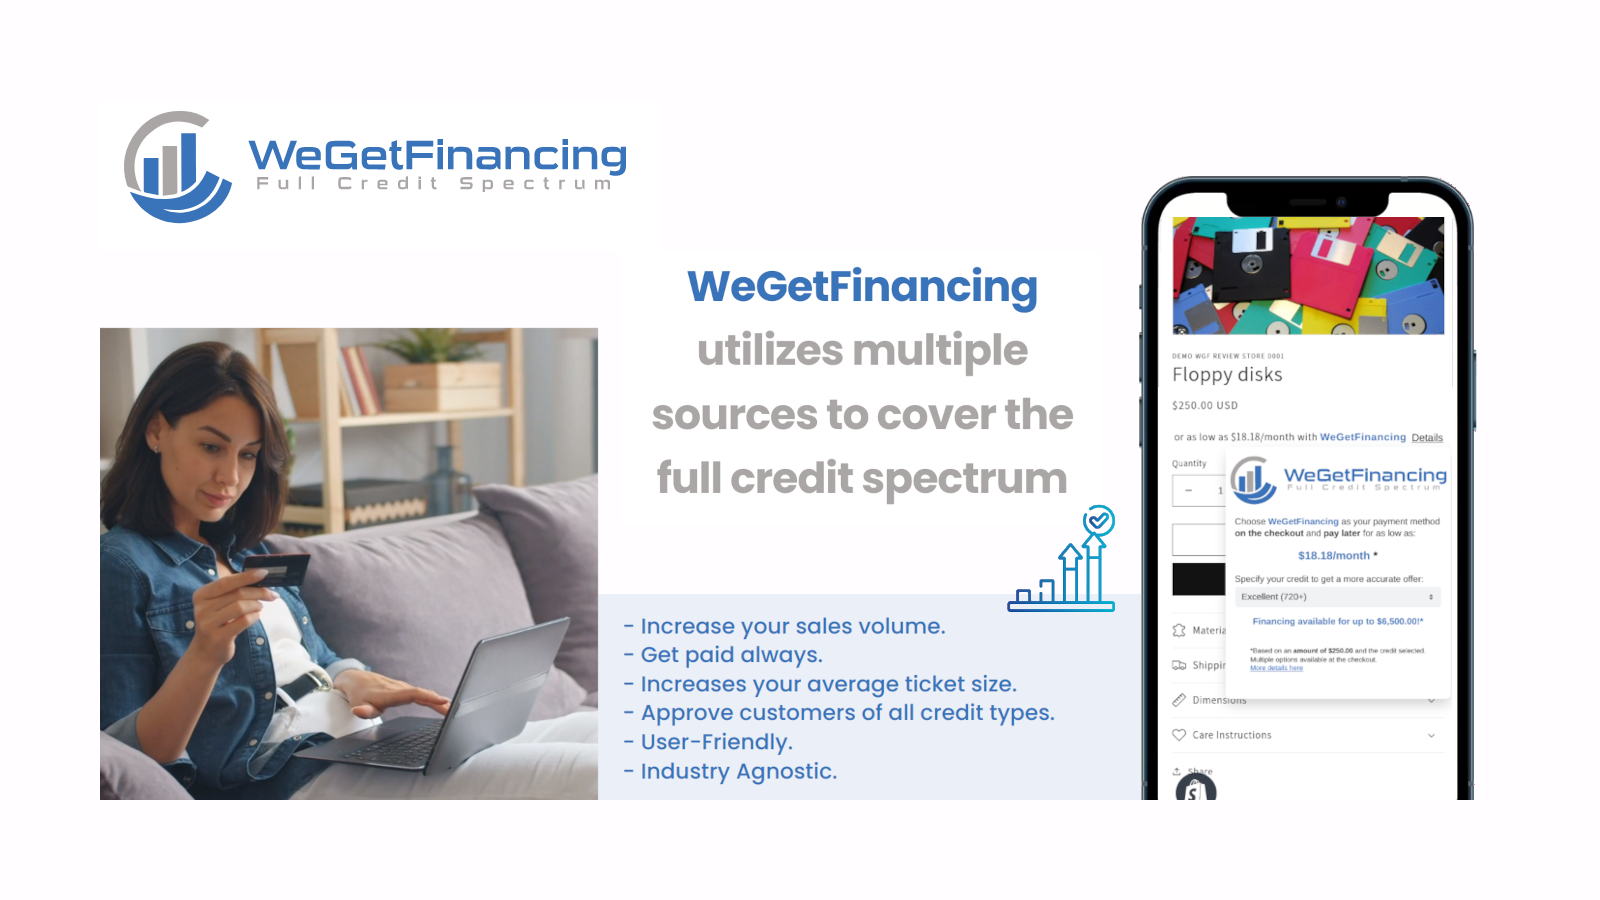 Öka din försäljningsvolym genom att erbjuda WeGetFinancing.